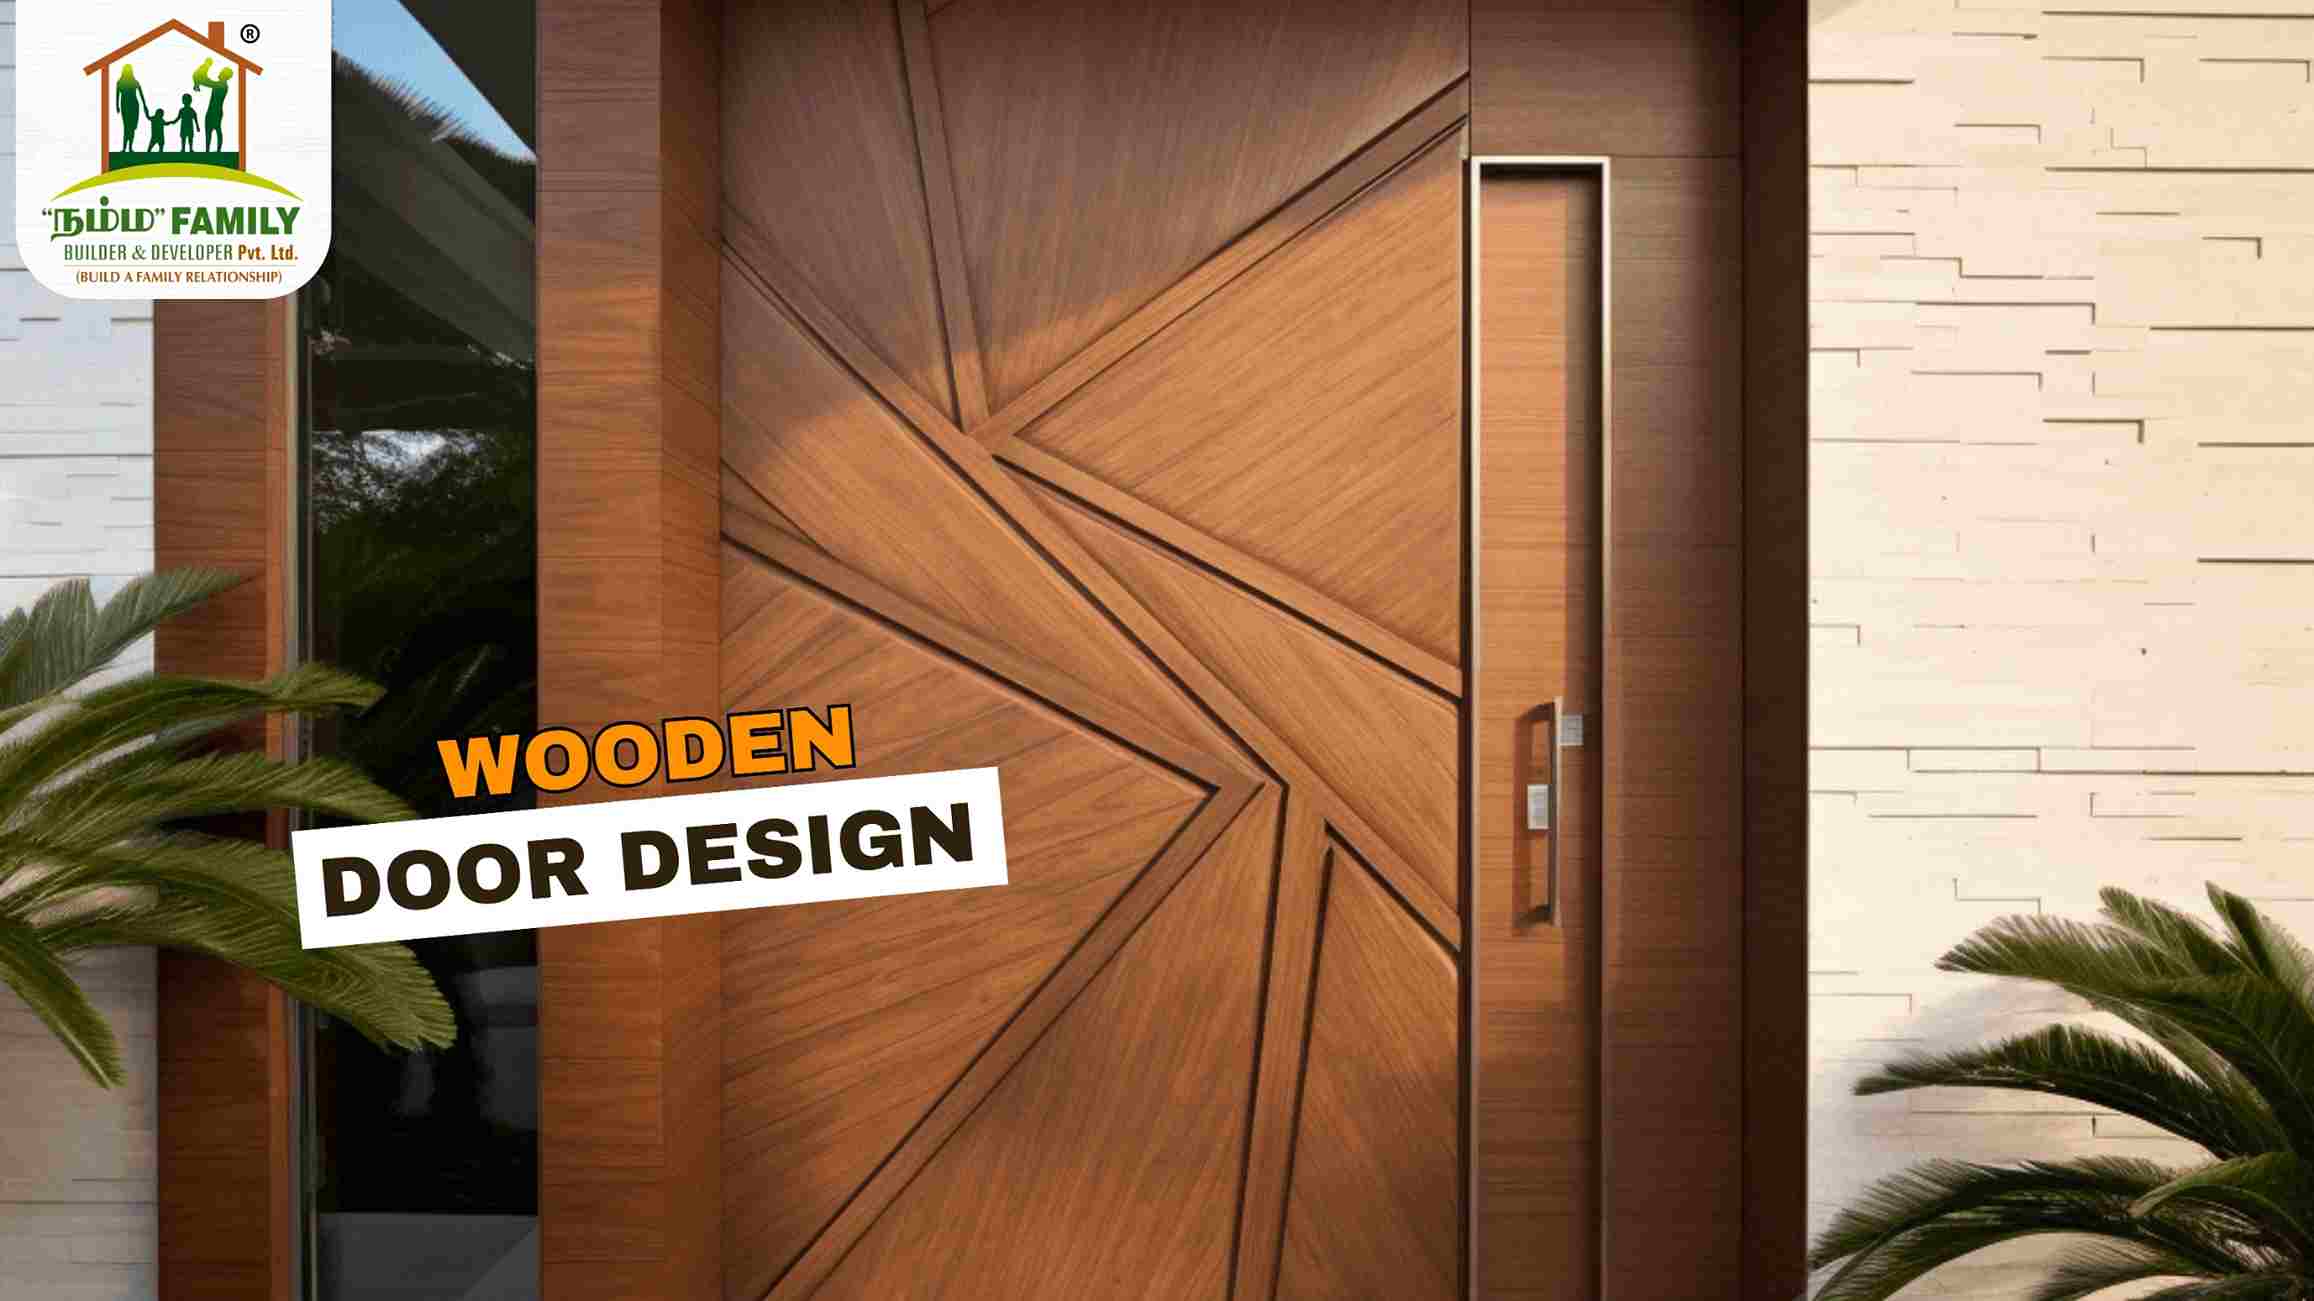 Wooden Door Design - Namma Family Builder